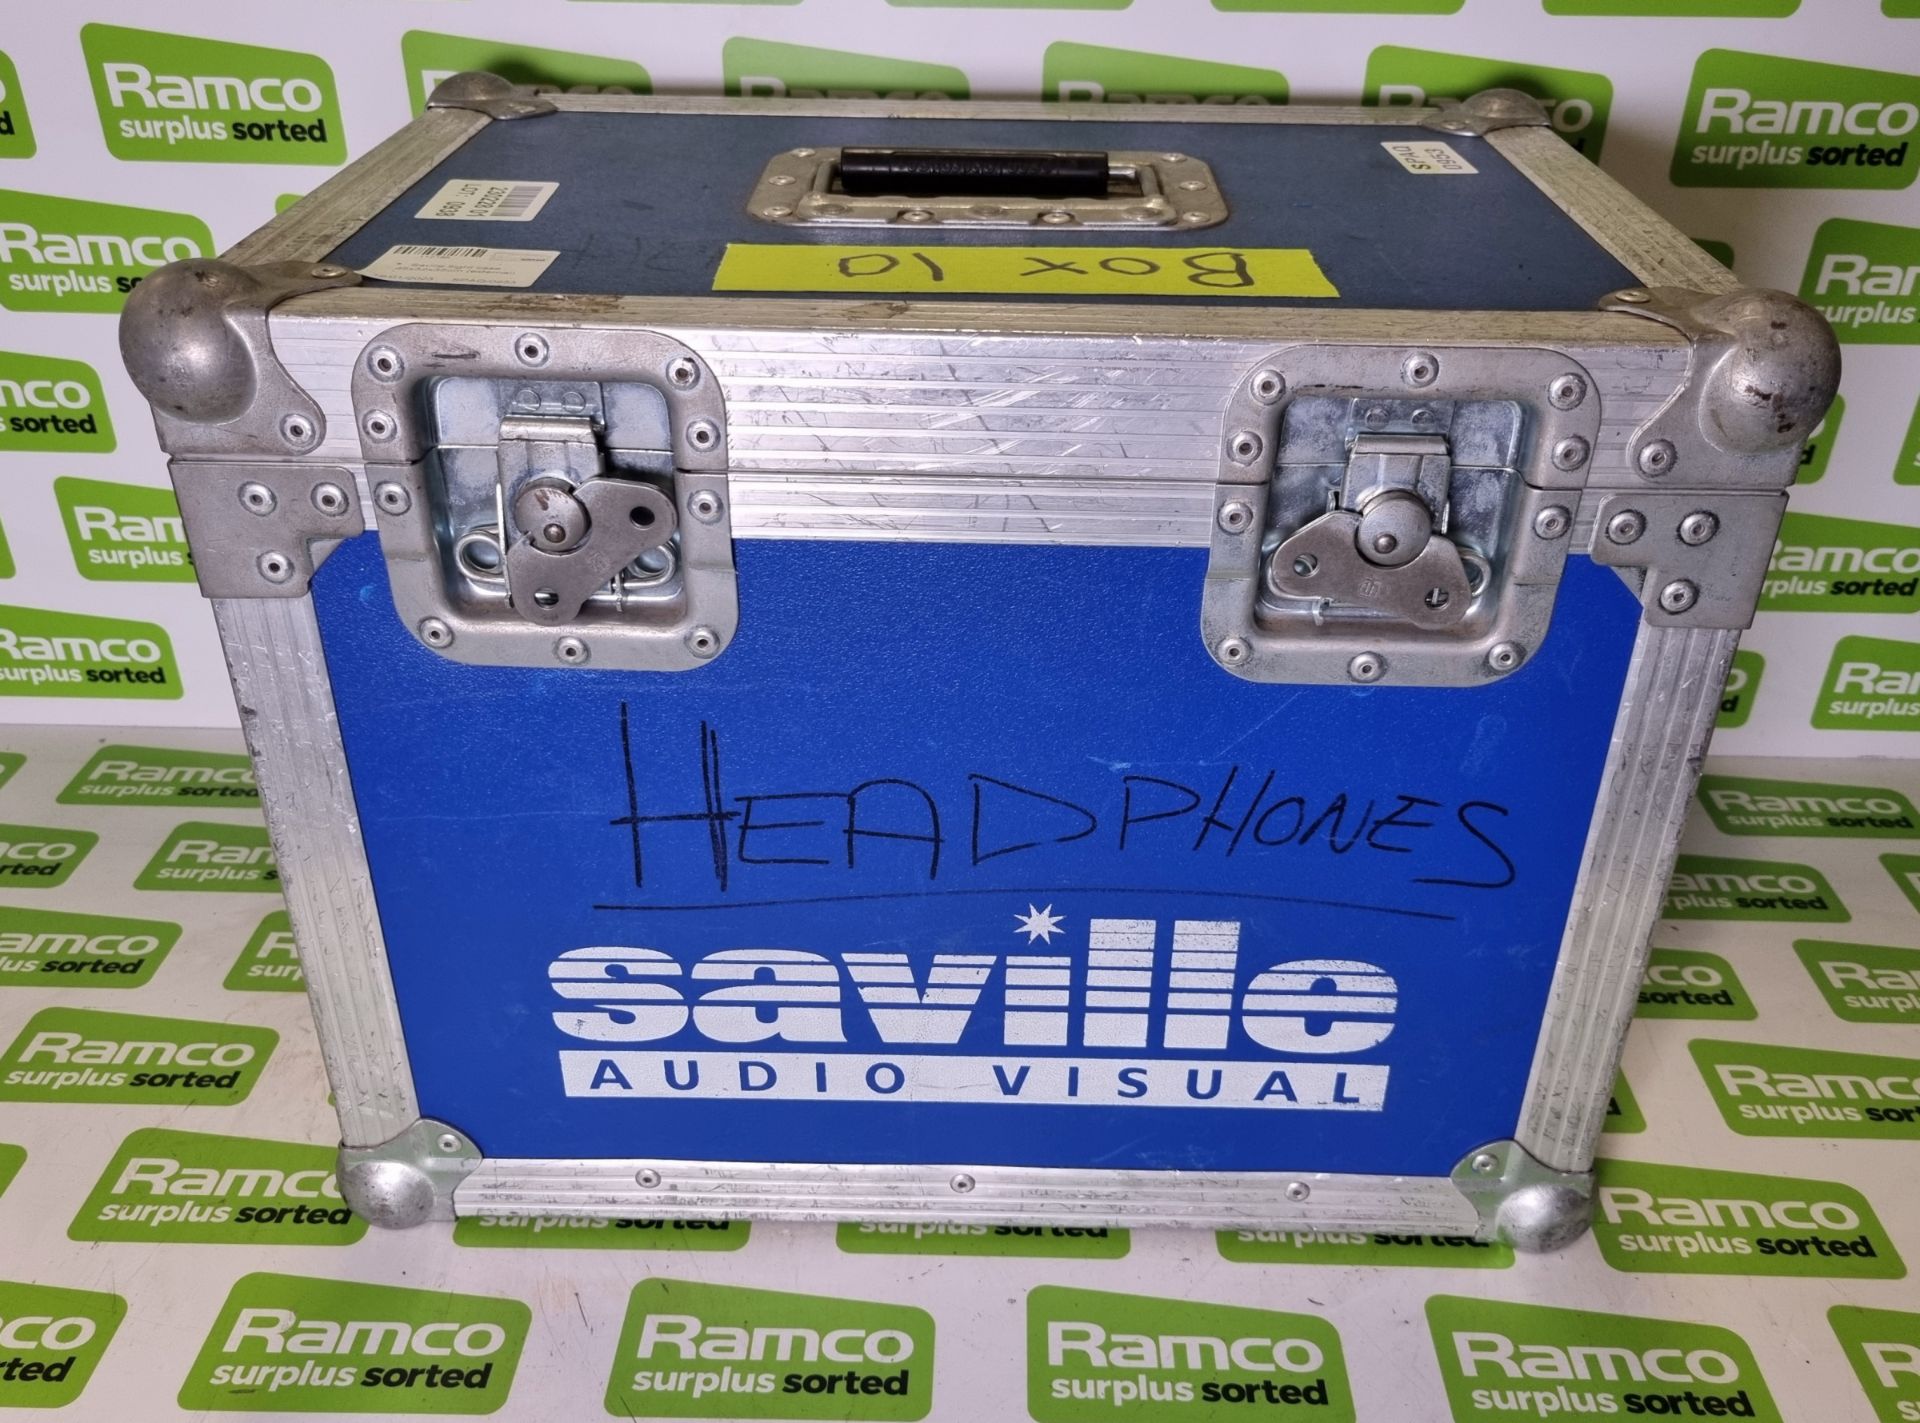 Saville flight case - 45 x 32 x 35cm (external)